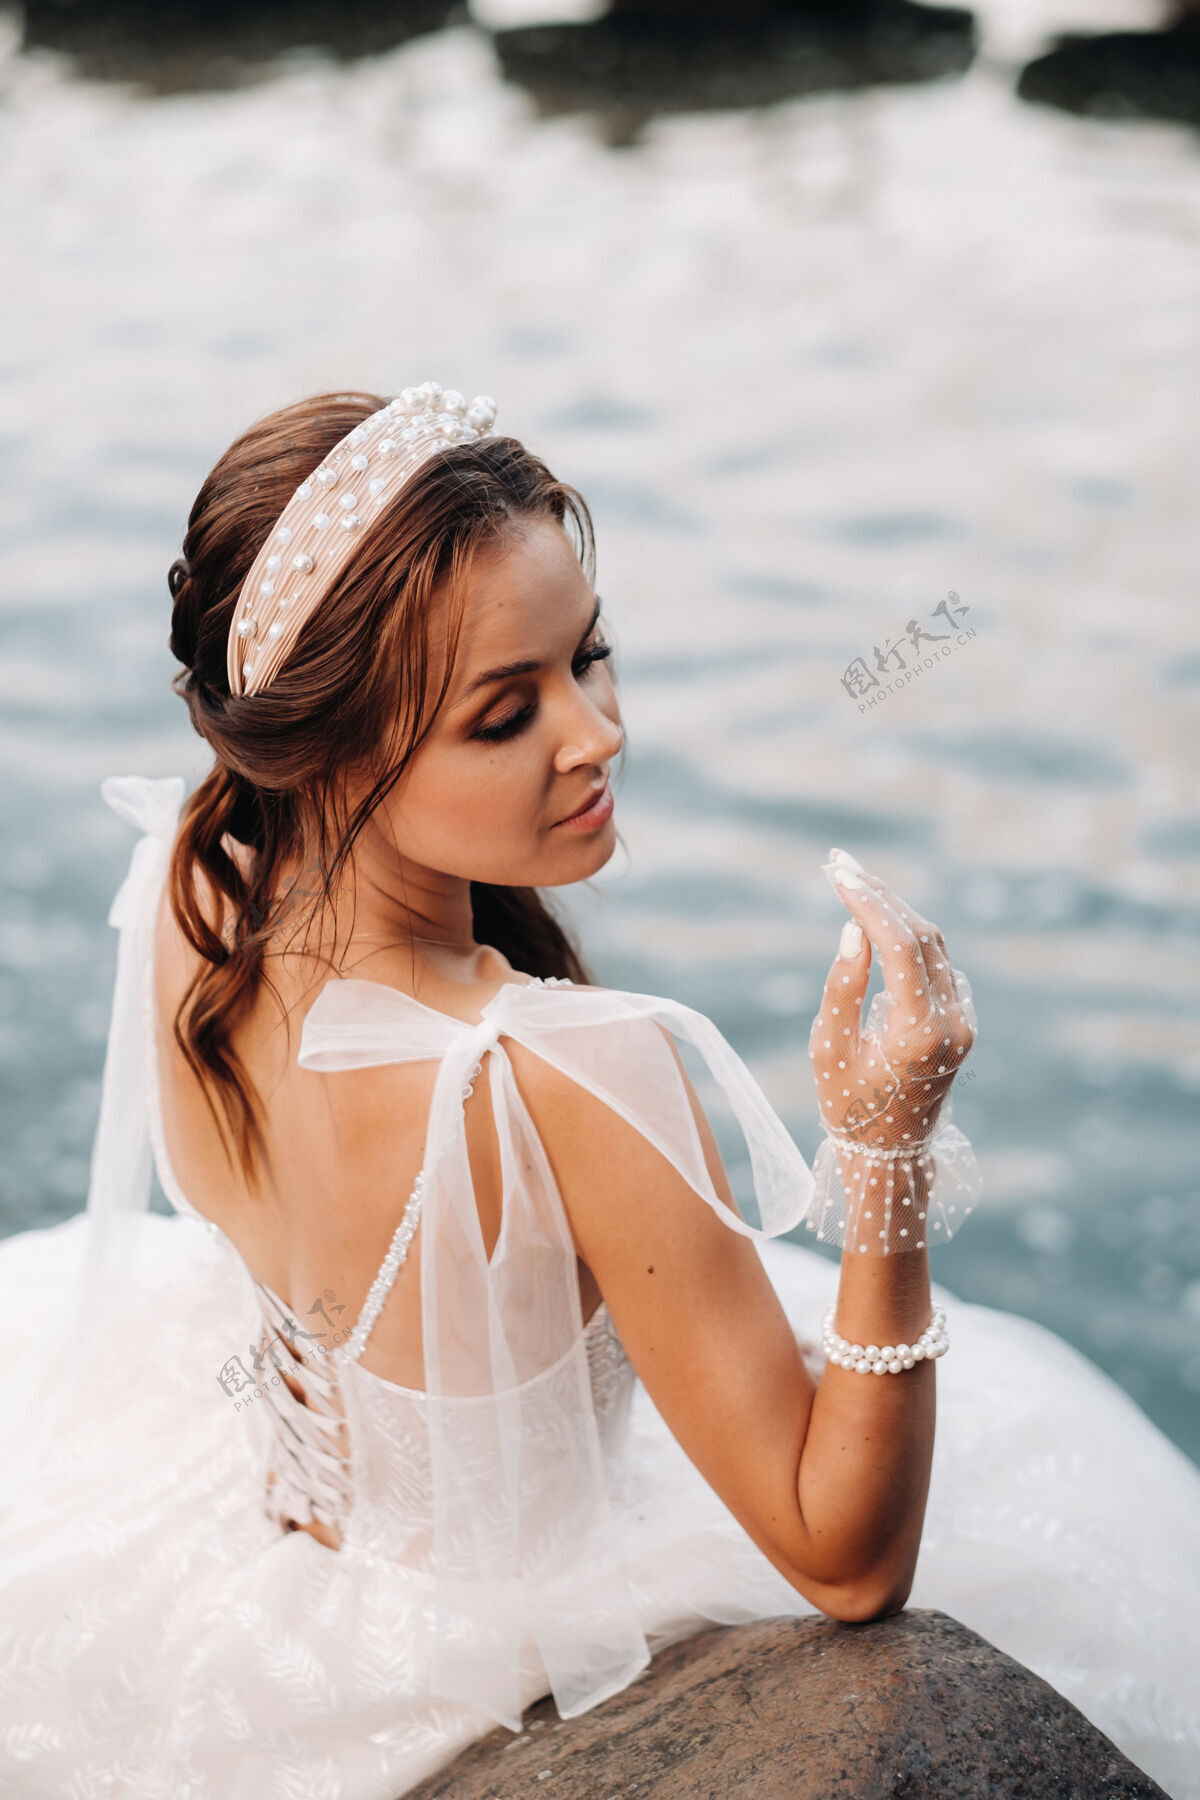 瀑布一位穿着白色礼服 戴着手套 赤脚的优雅新娘正坐在公园的瀑布旁 享受着大自然可爱自然年轻